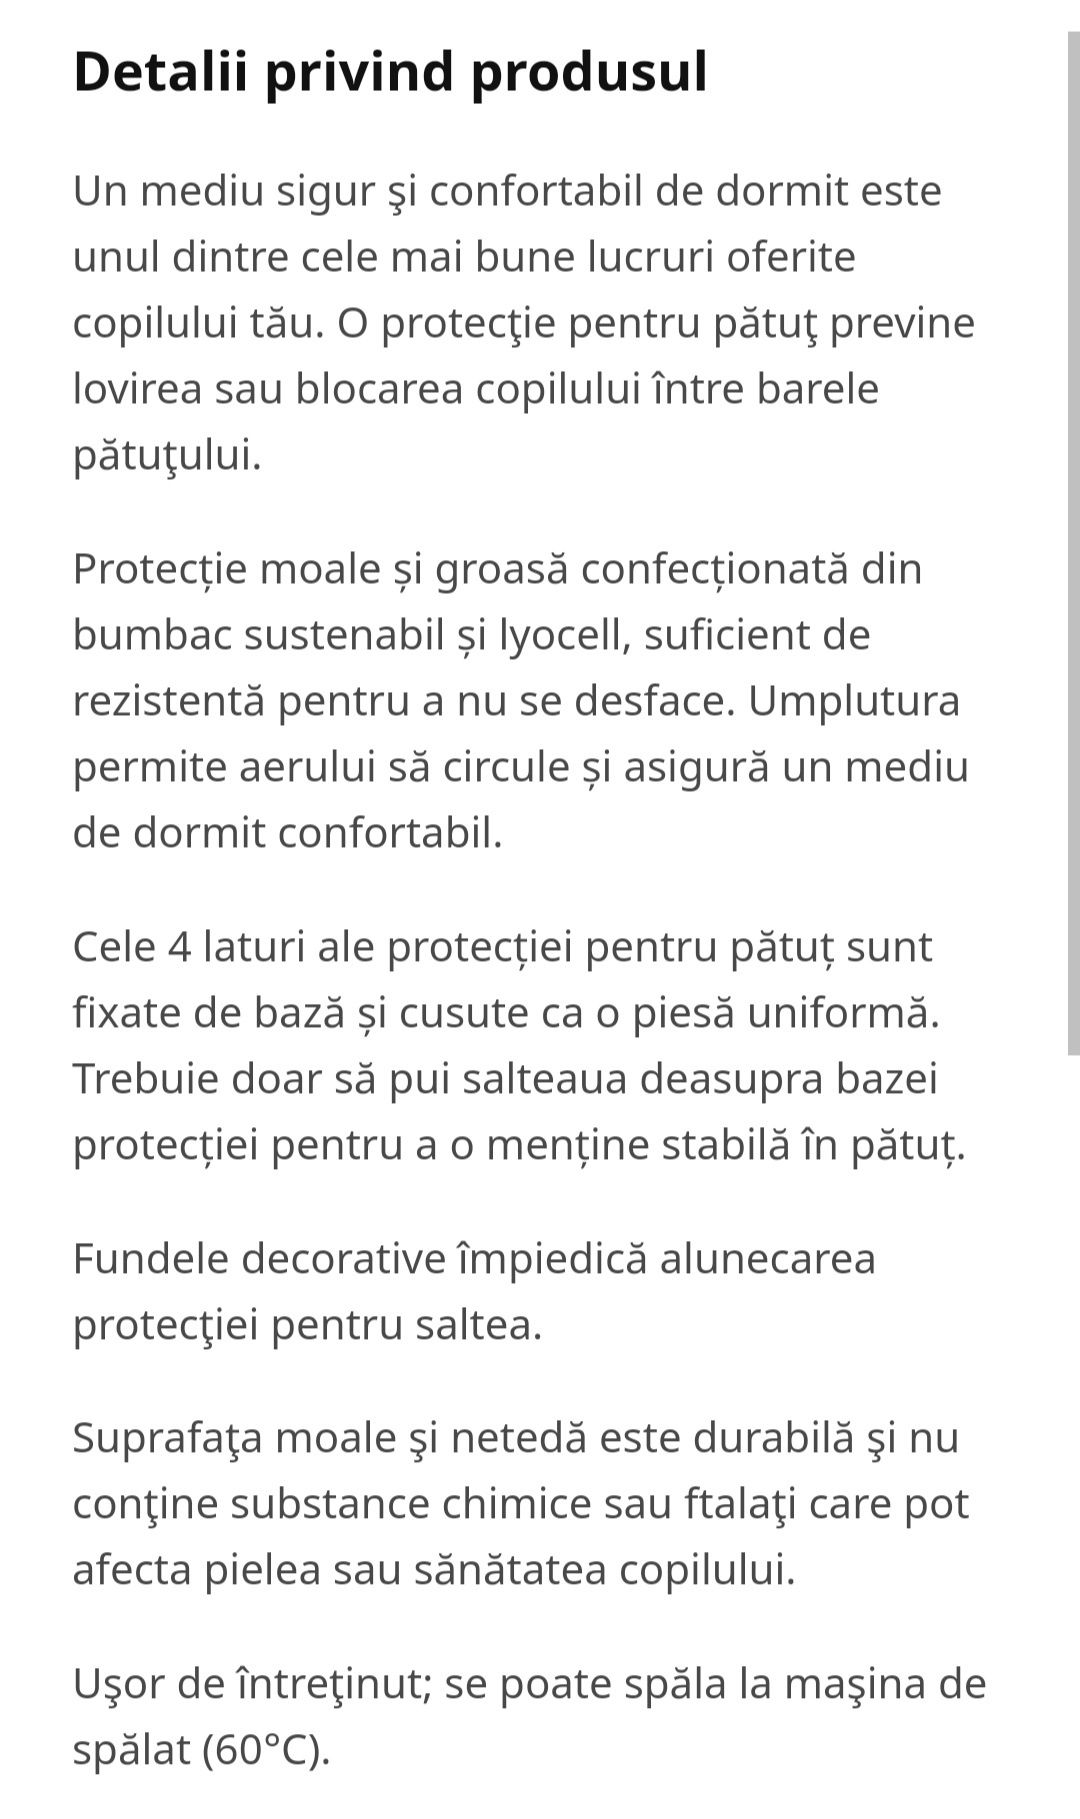 LENAST protectie patut buline / alb gri
Protecţie pătuţ, buline/alb gr